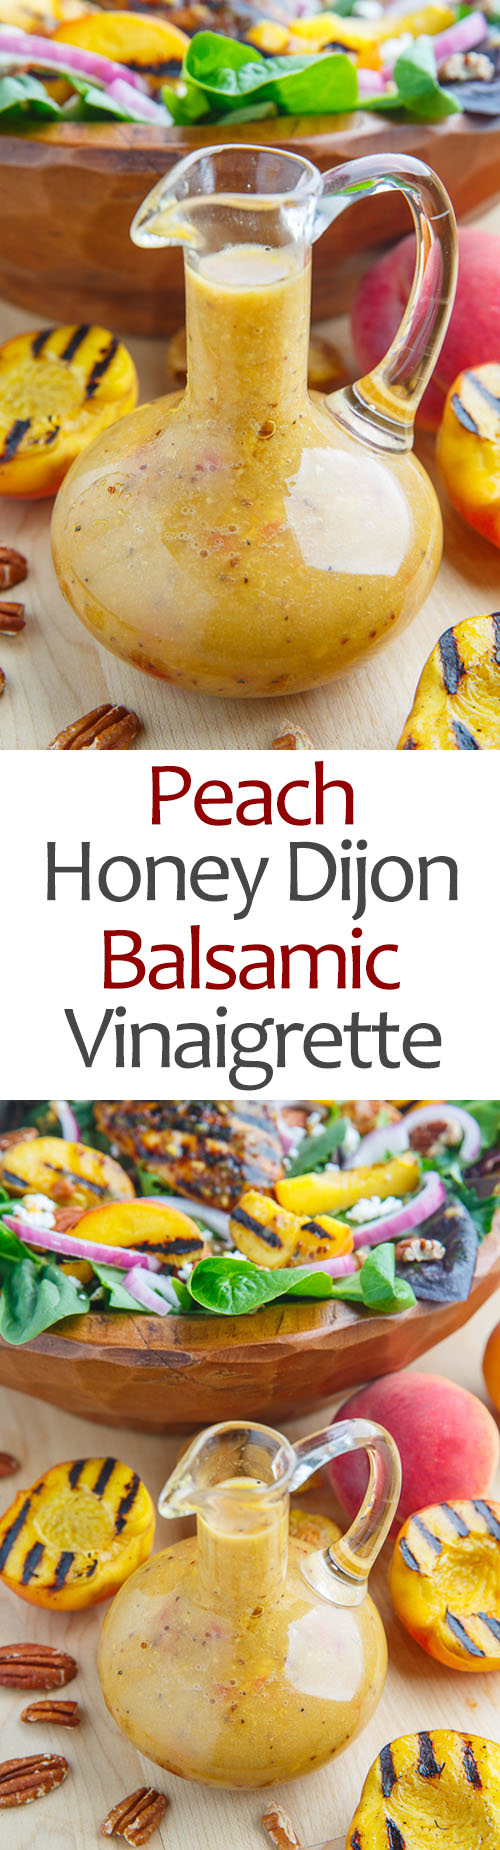 Peach Honey Dijon Balsamic Vinaigrette